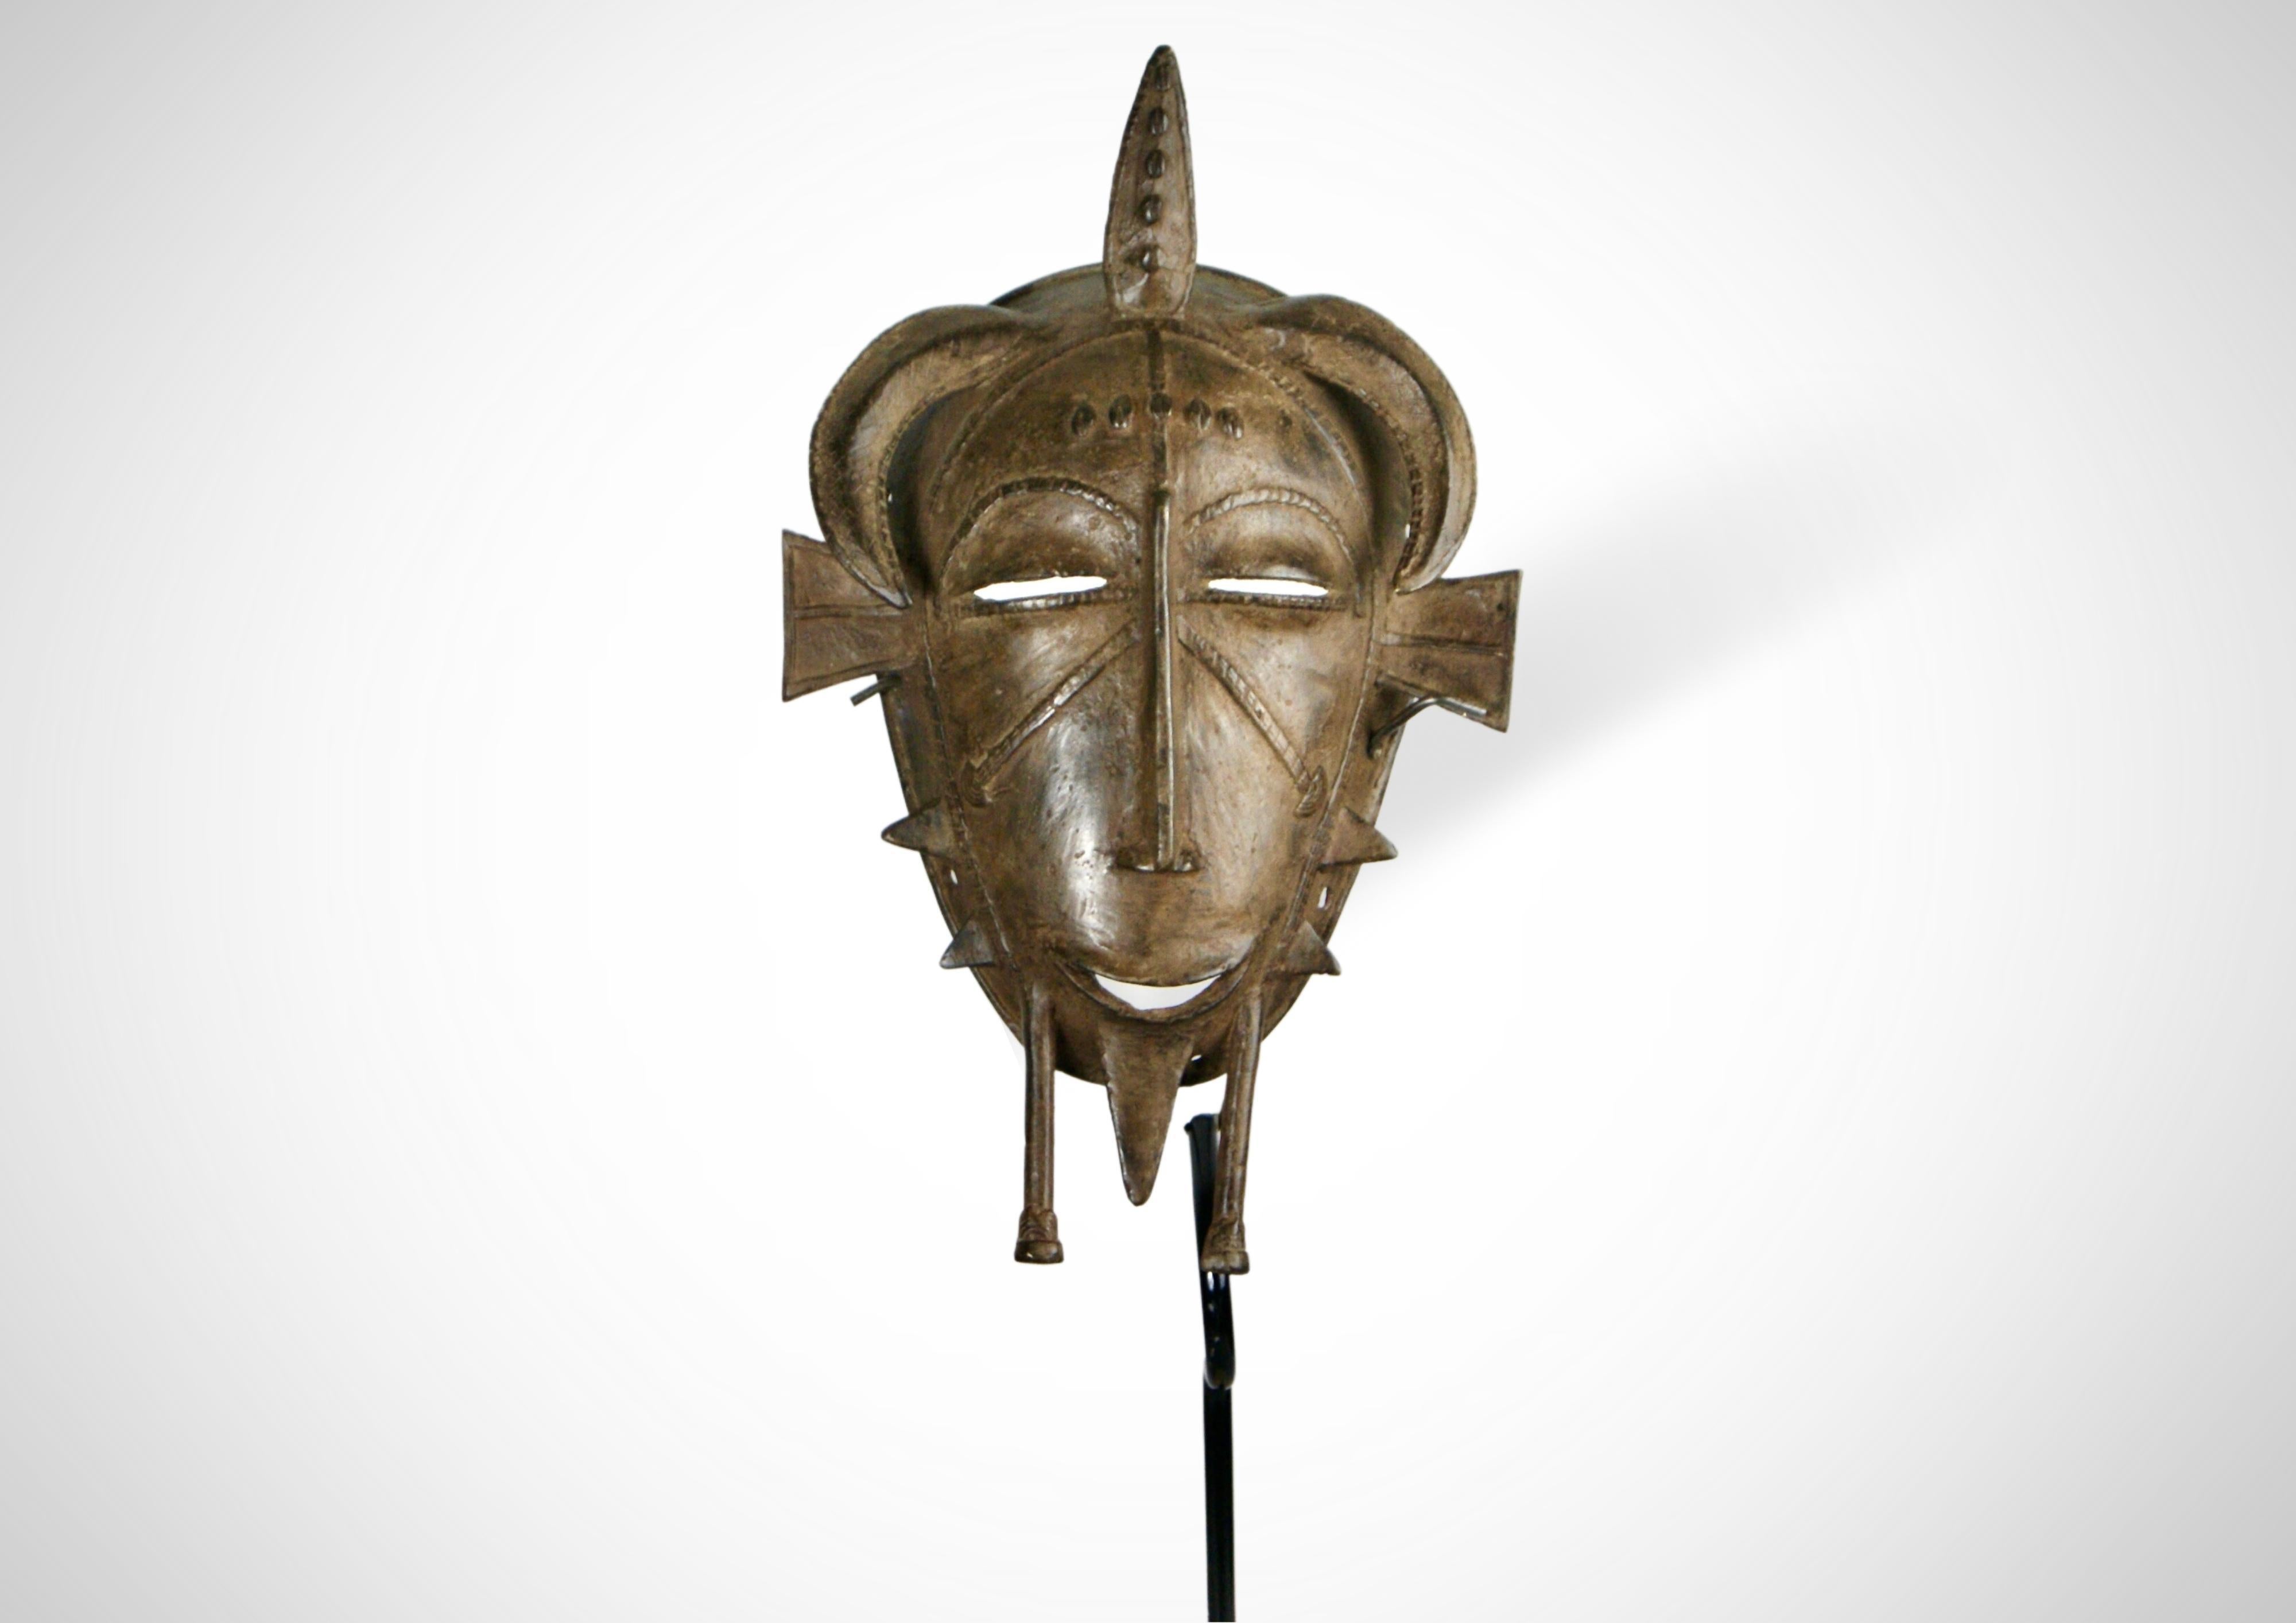 Gesichtsmaske der Senufo aus Bronzeguss (Kpelie) von der Elfenbeinküste in Westafrika.
Hergestellt nach dem Wachsausschmelzverfahren.
Traditionell ist die 